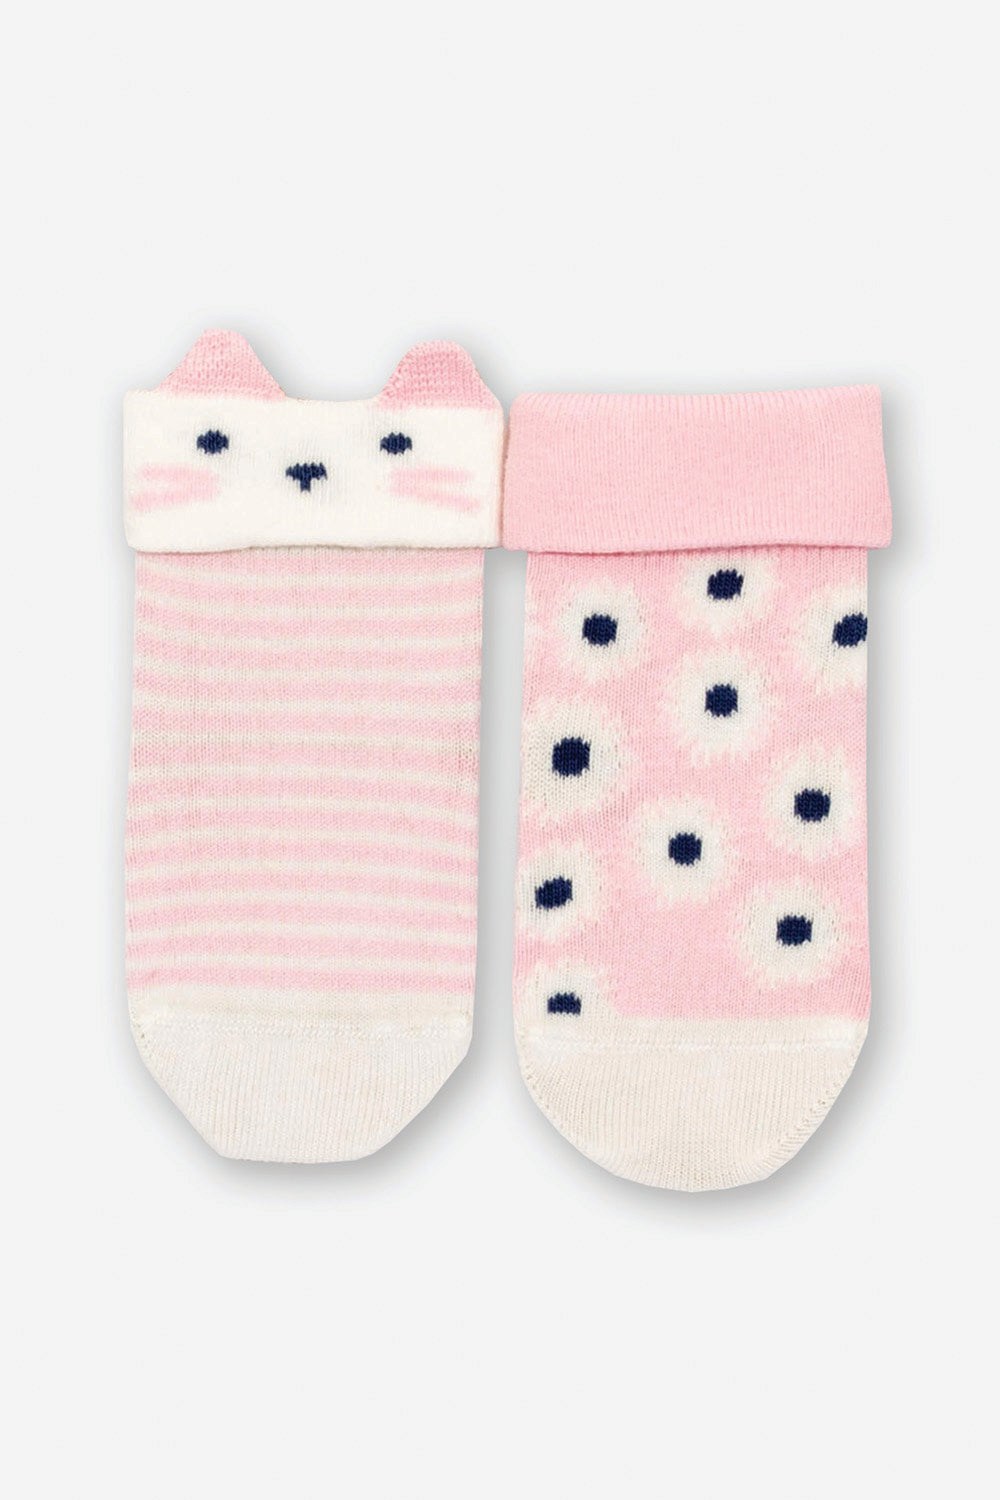 Kitty Cat Baby Socks -